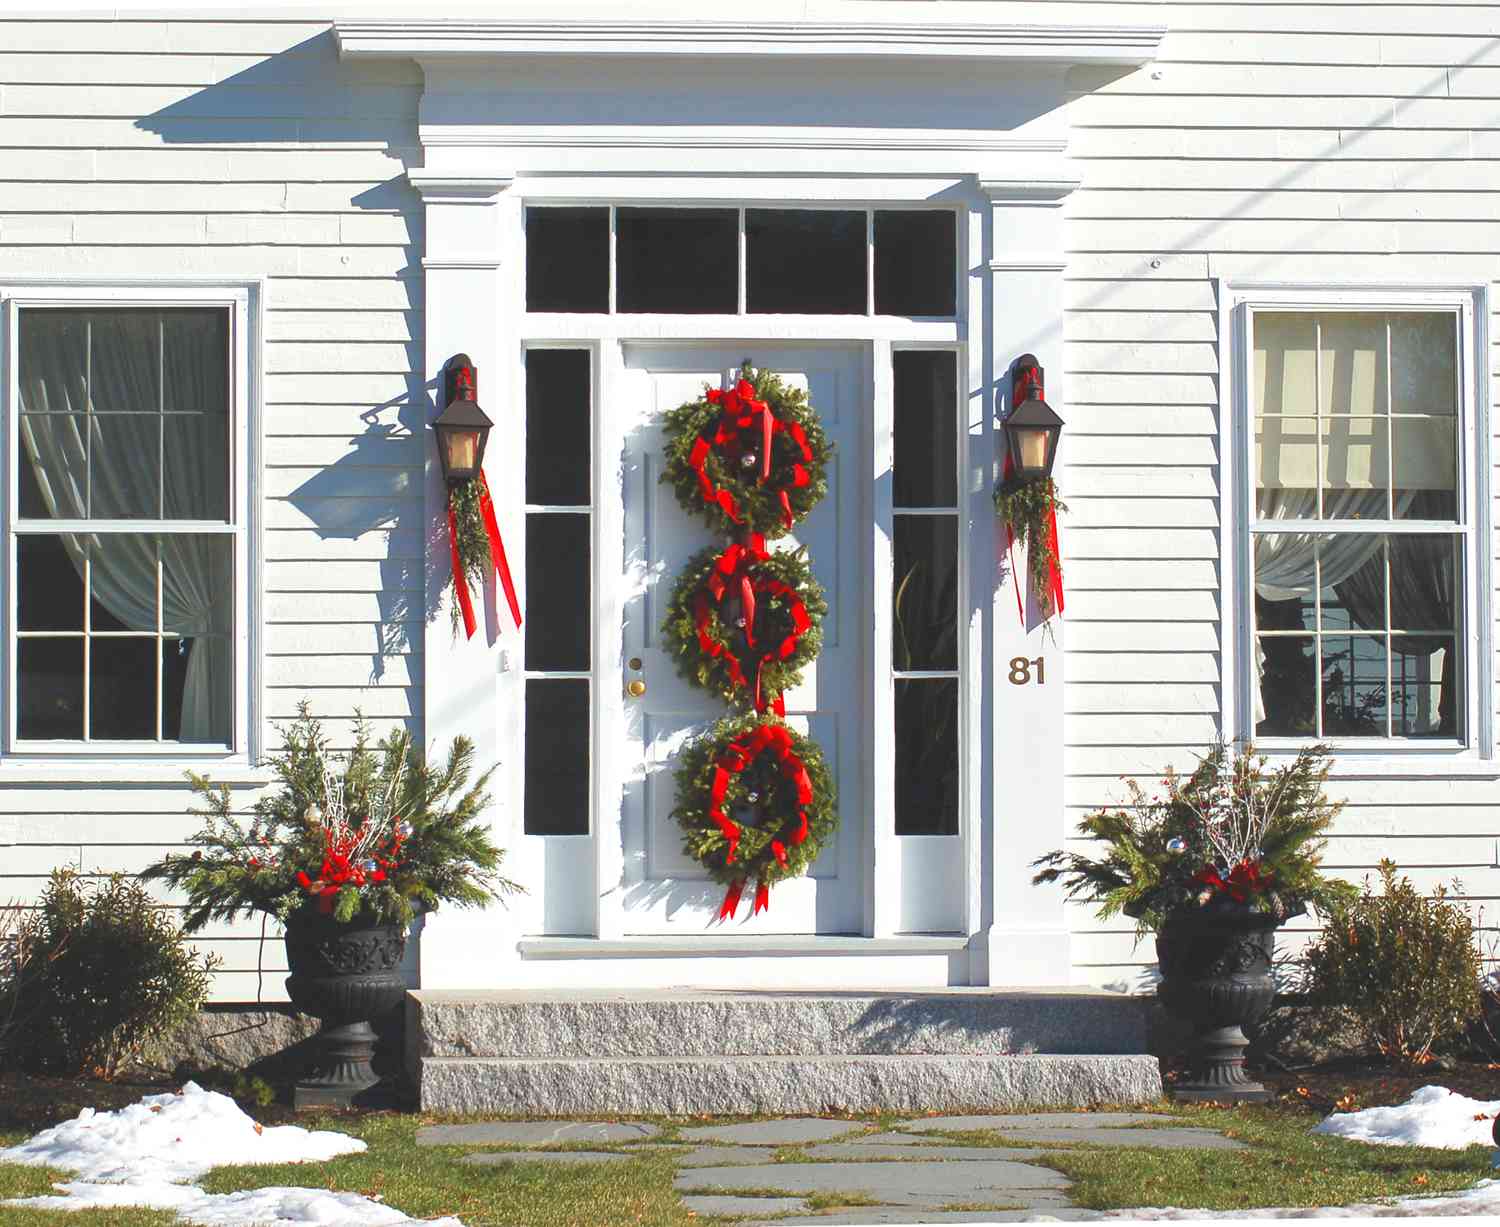 Bild: 3 Kränze, Girlanden und bepflanzte Urnen schmücken diesen Hauseingang zu Weihnachten.